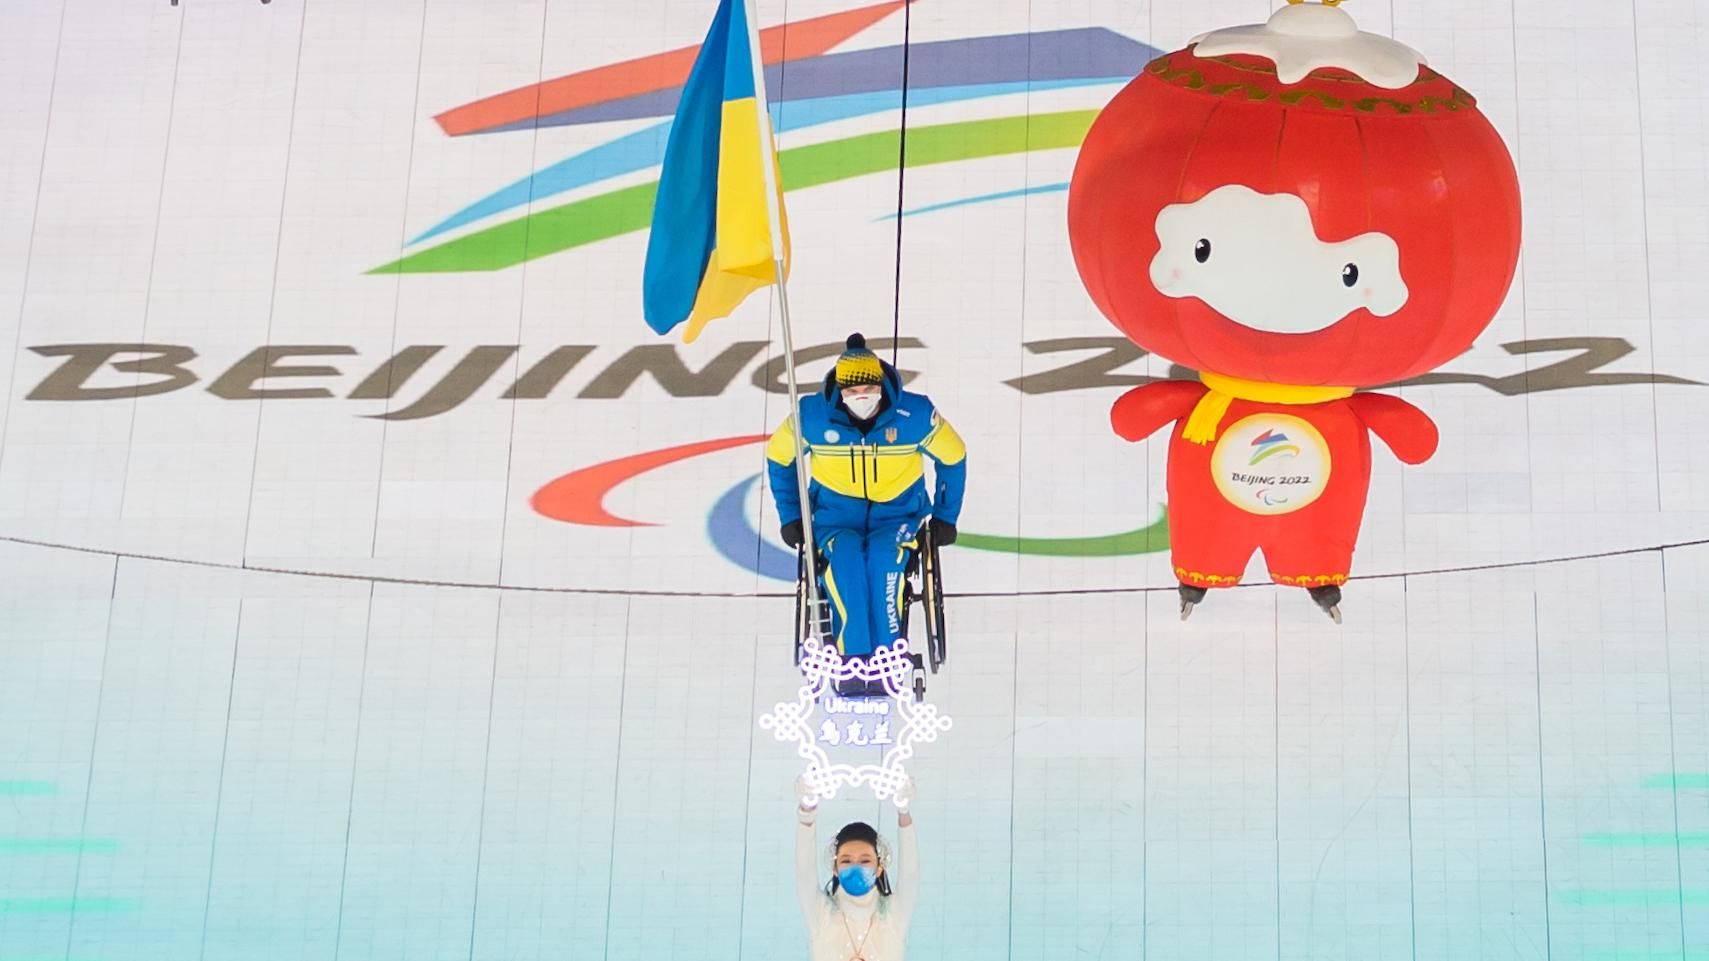 Україна – лідер медального заліку Паралімпіади-2022 після першого дня змагань - 5 марта 2022 - 24 канал Спорт